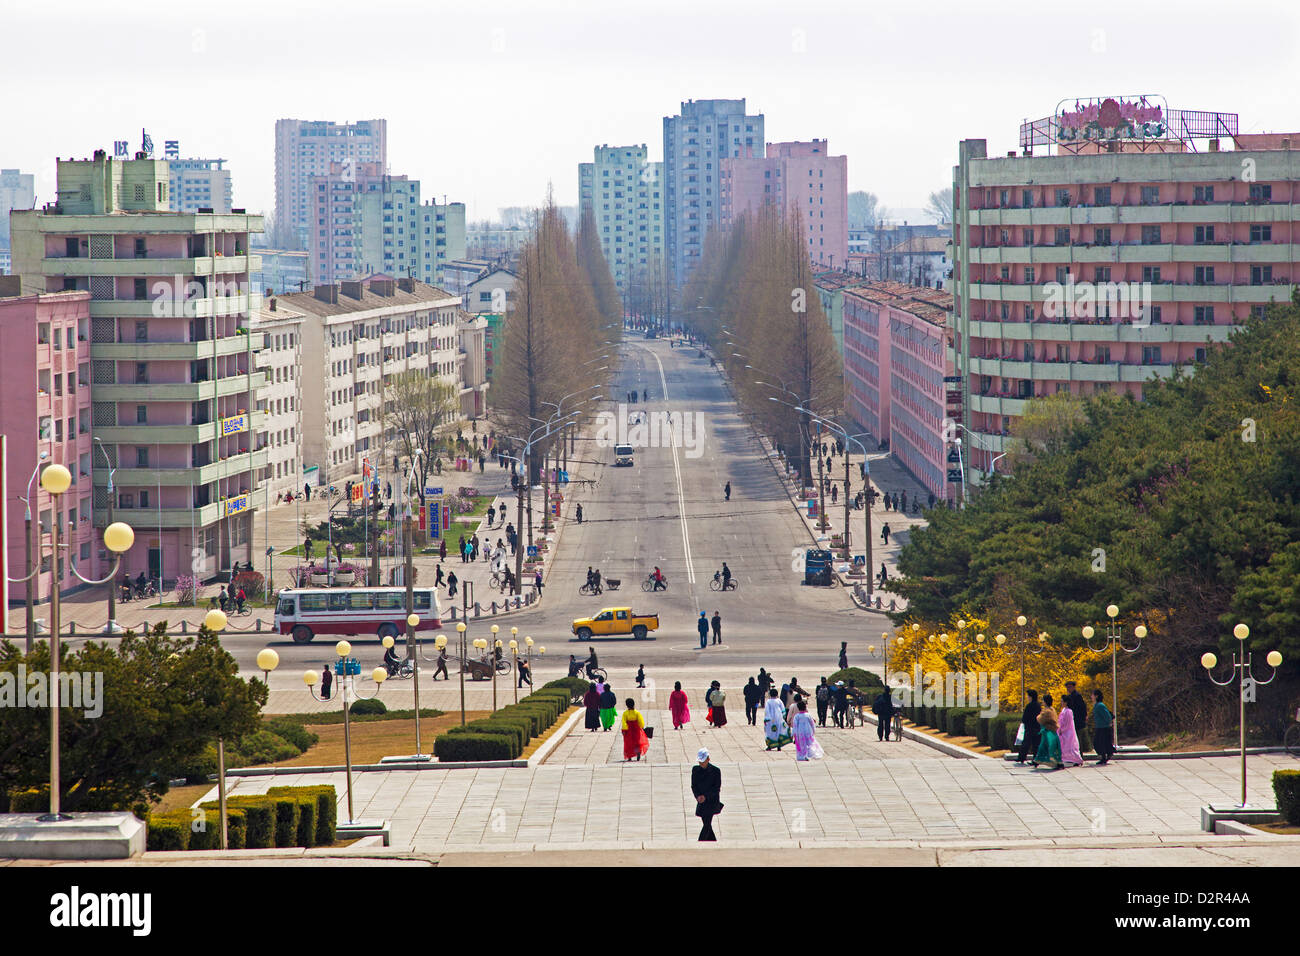 Les rues de la ville, Hamhung, République populaire démocratique de Corée (RPDC), la Corée du Nord, d'Asie Banque D'Images